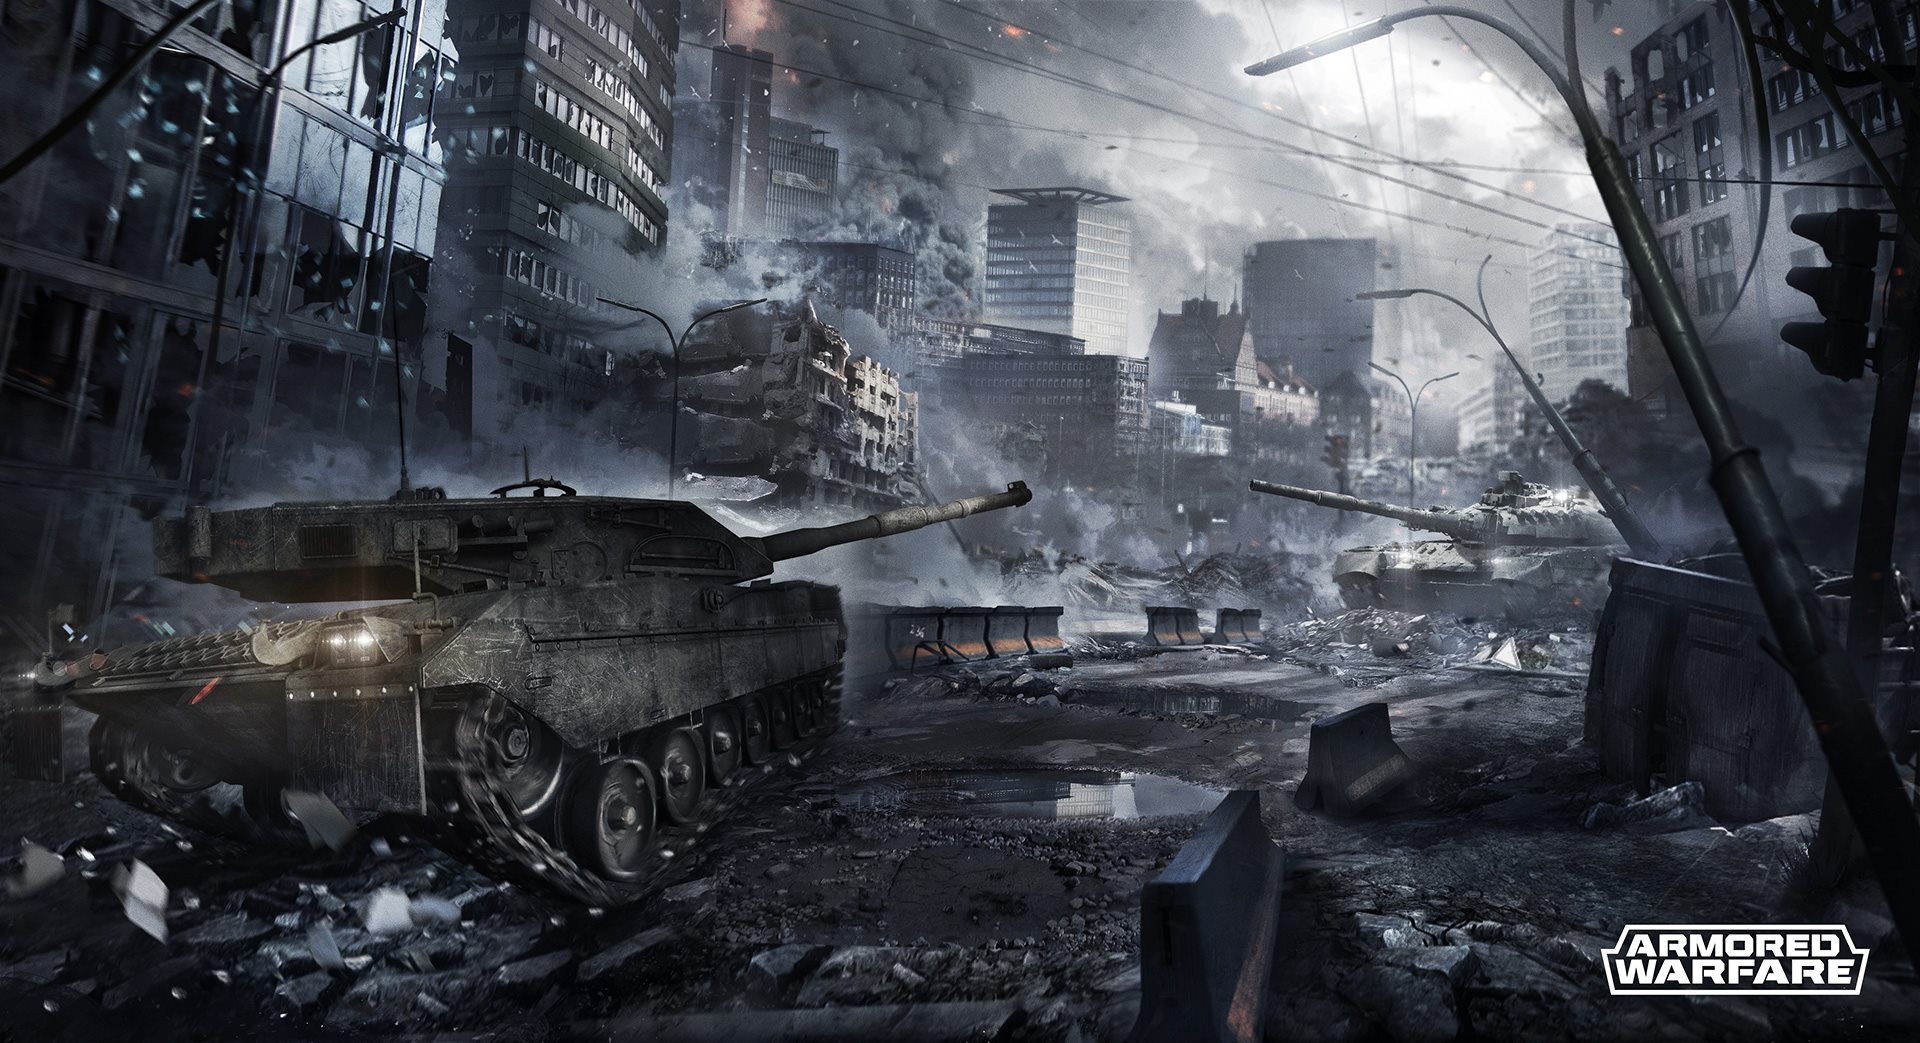 Armored warfare: Đối thủ đáng gờm của World of tanks